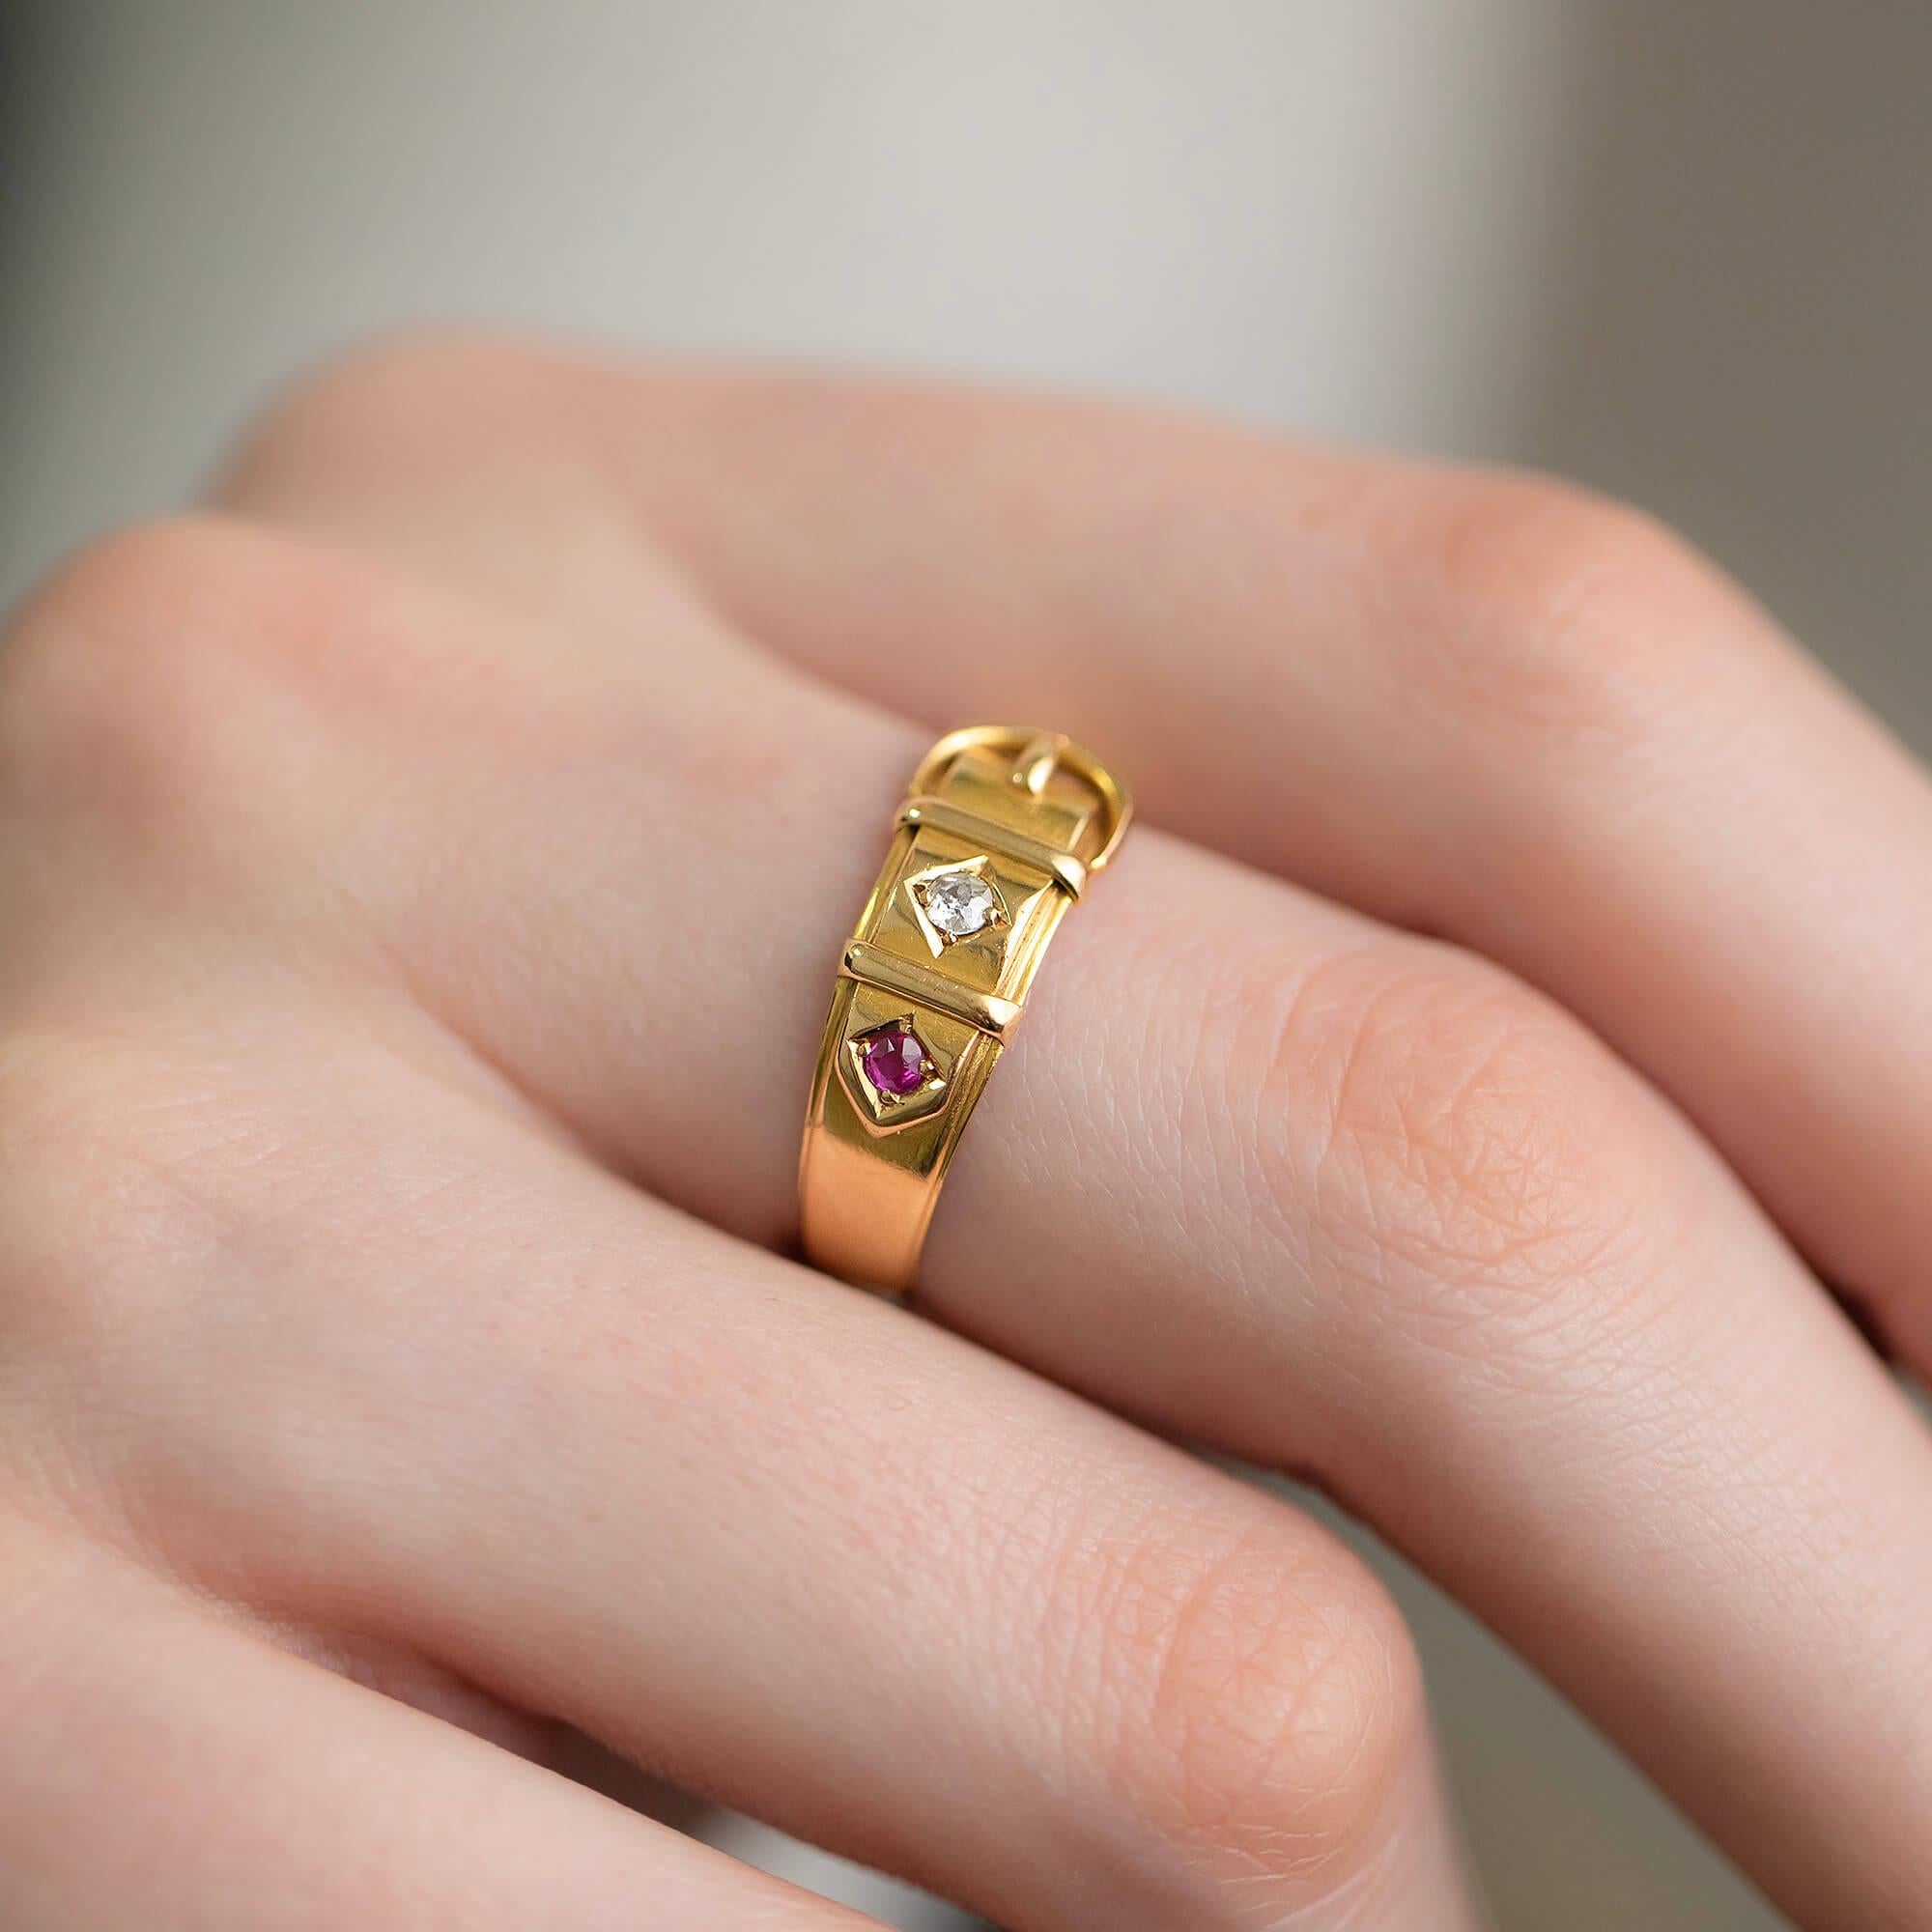 Dieser viktorianische Goldschnallenring ist mit einem Rubin und einem Diamanten besetzt. Die Schnalle und die Schlaufen sind gut ausgeprägt. Ein schlichtes und doch elegantes Stück.

Diamant: Ein alter Schliff, gutes MATERIAL, 0,04ct
Edelstein: Ein